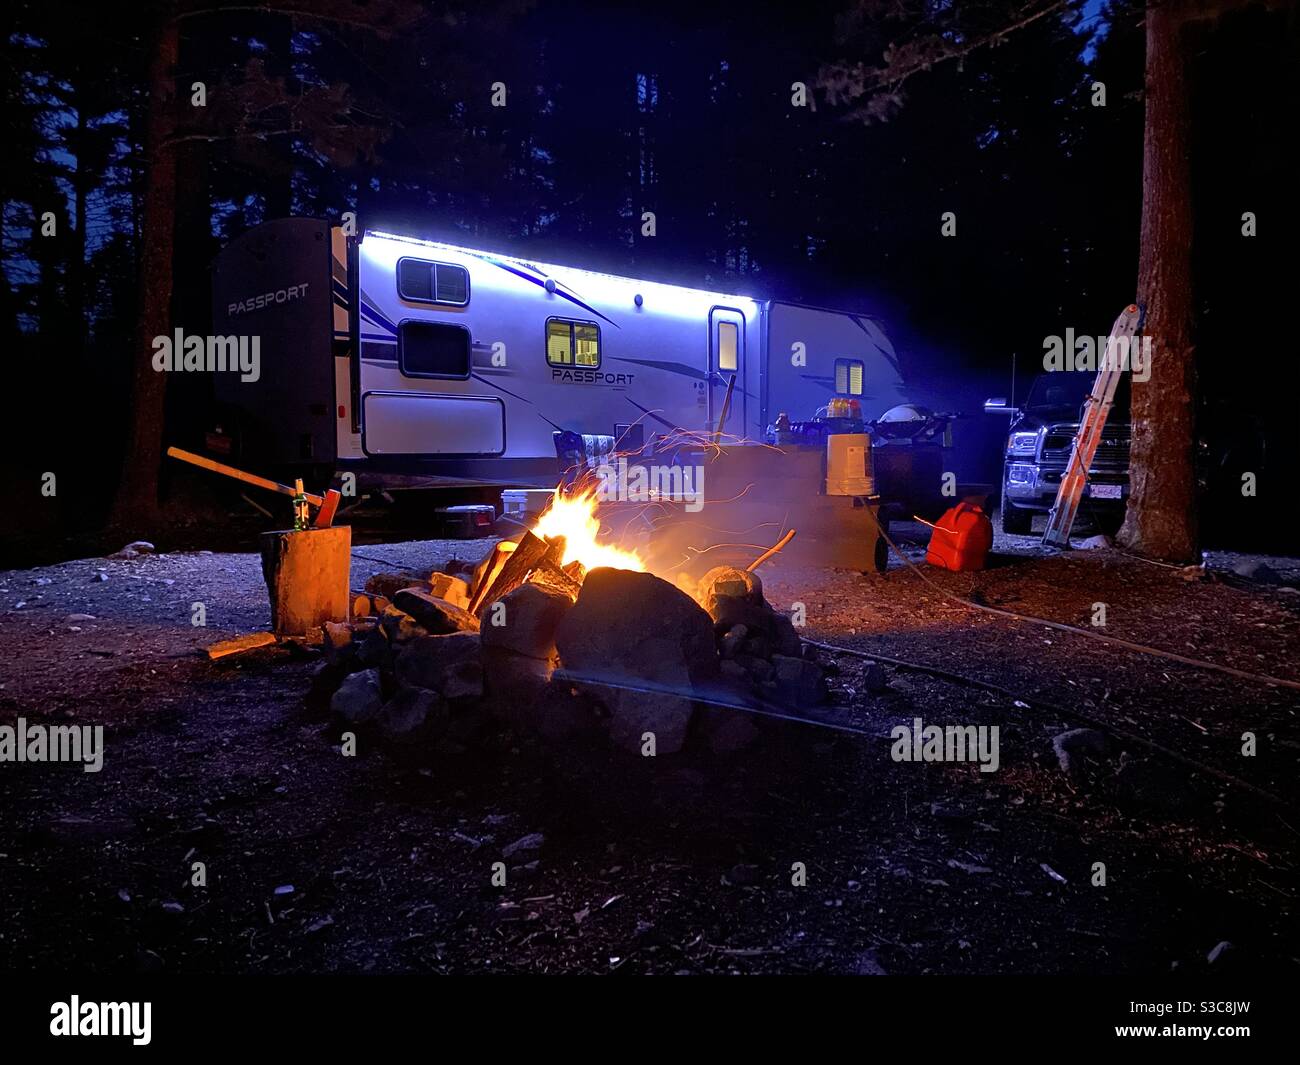 rv camping at night